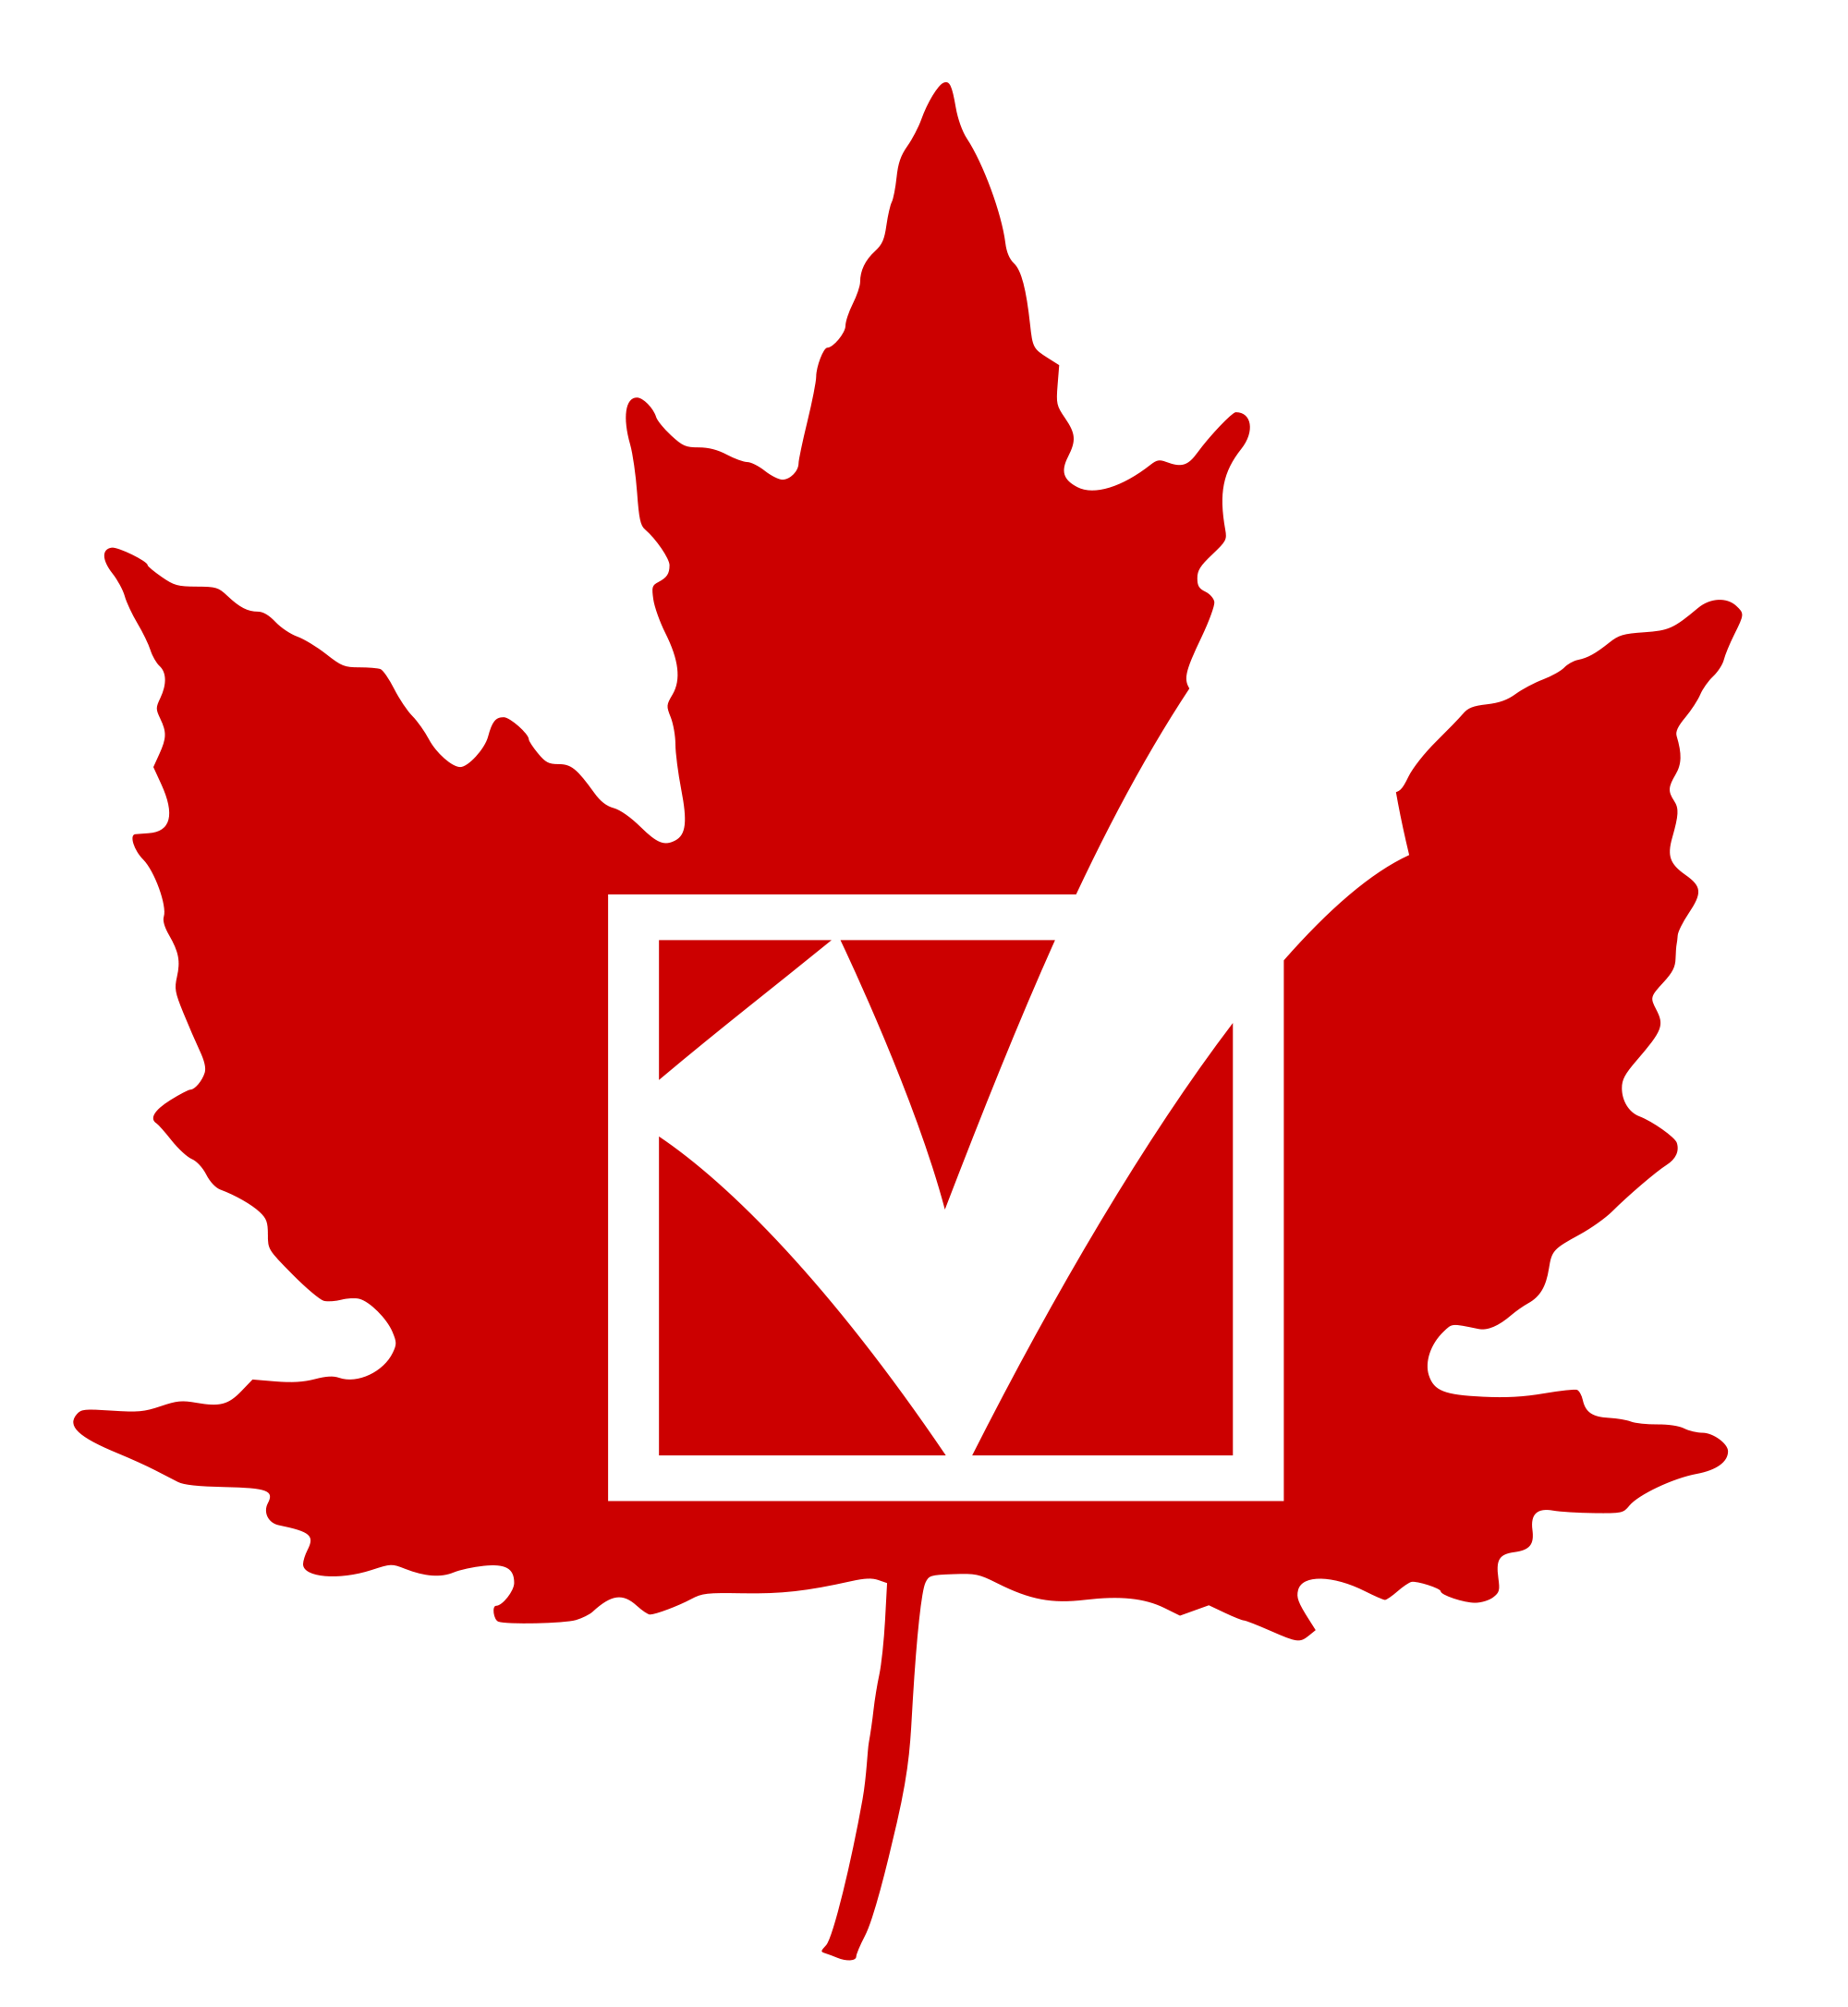 Canadians cast their vote. Voting clipart political participation